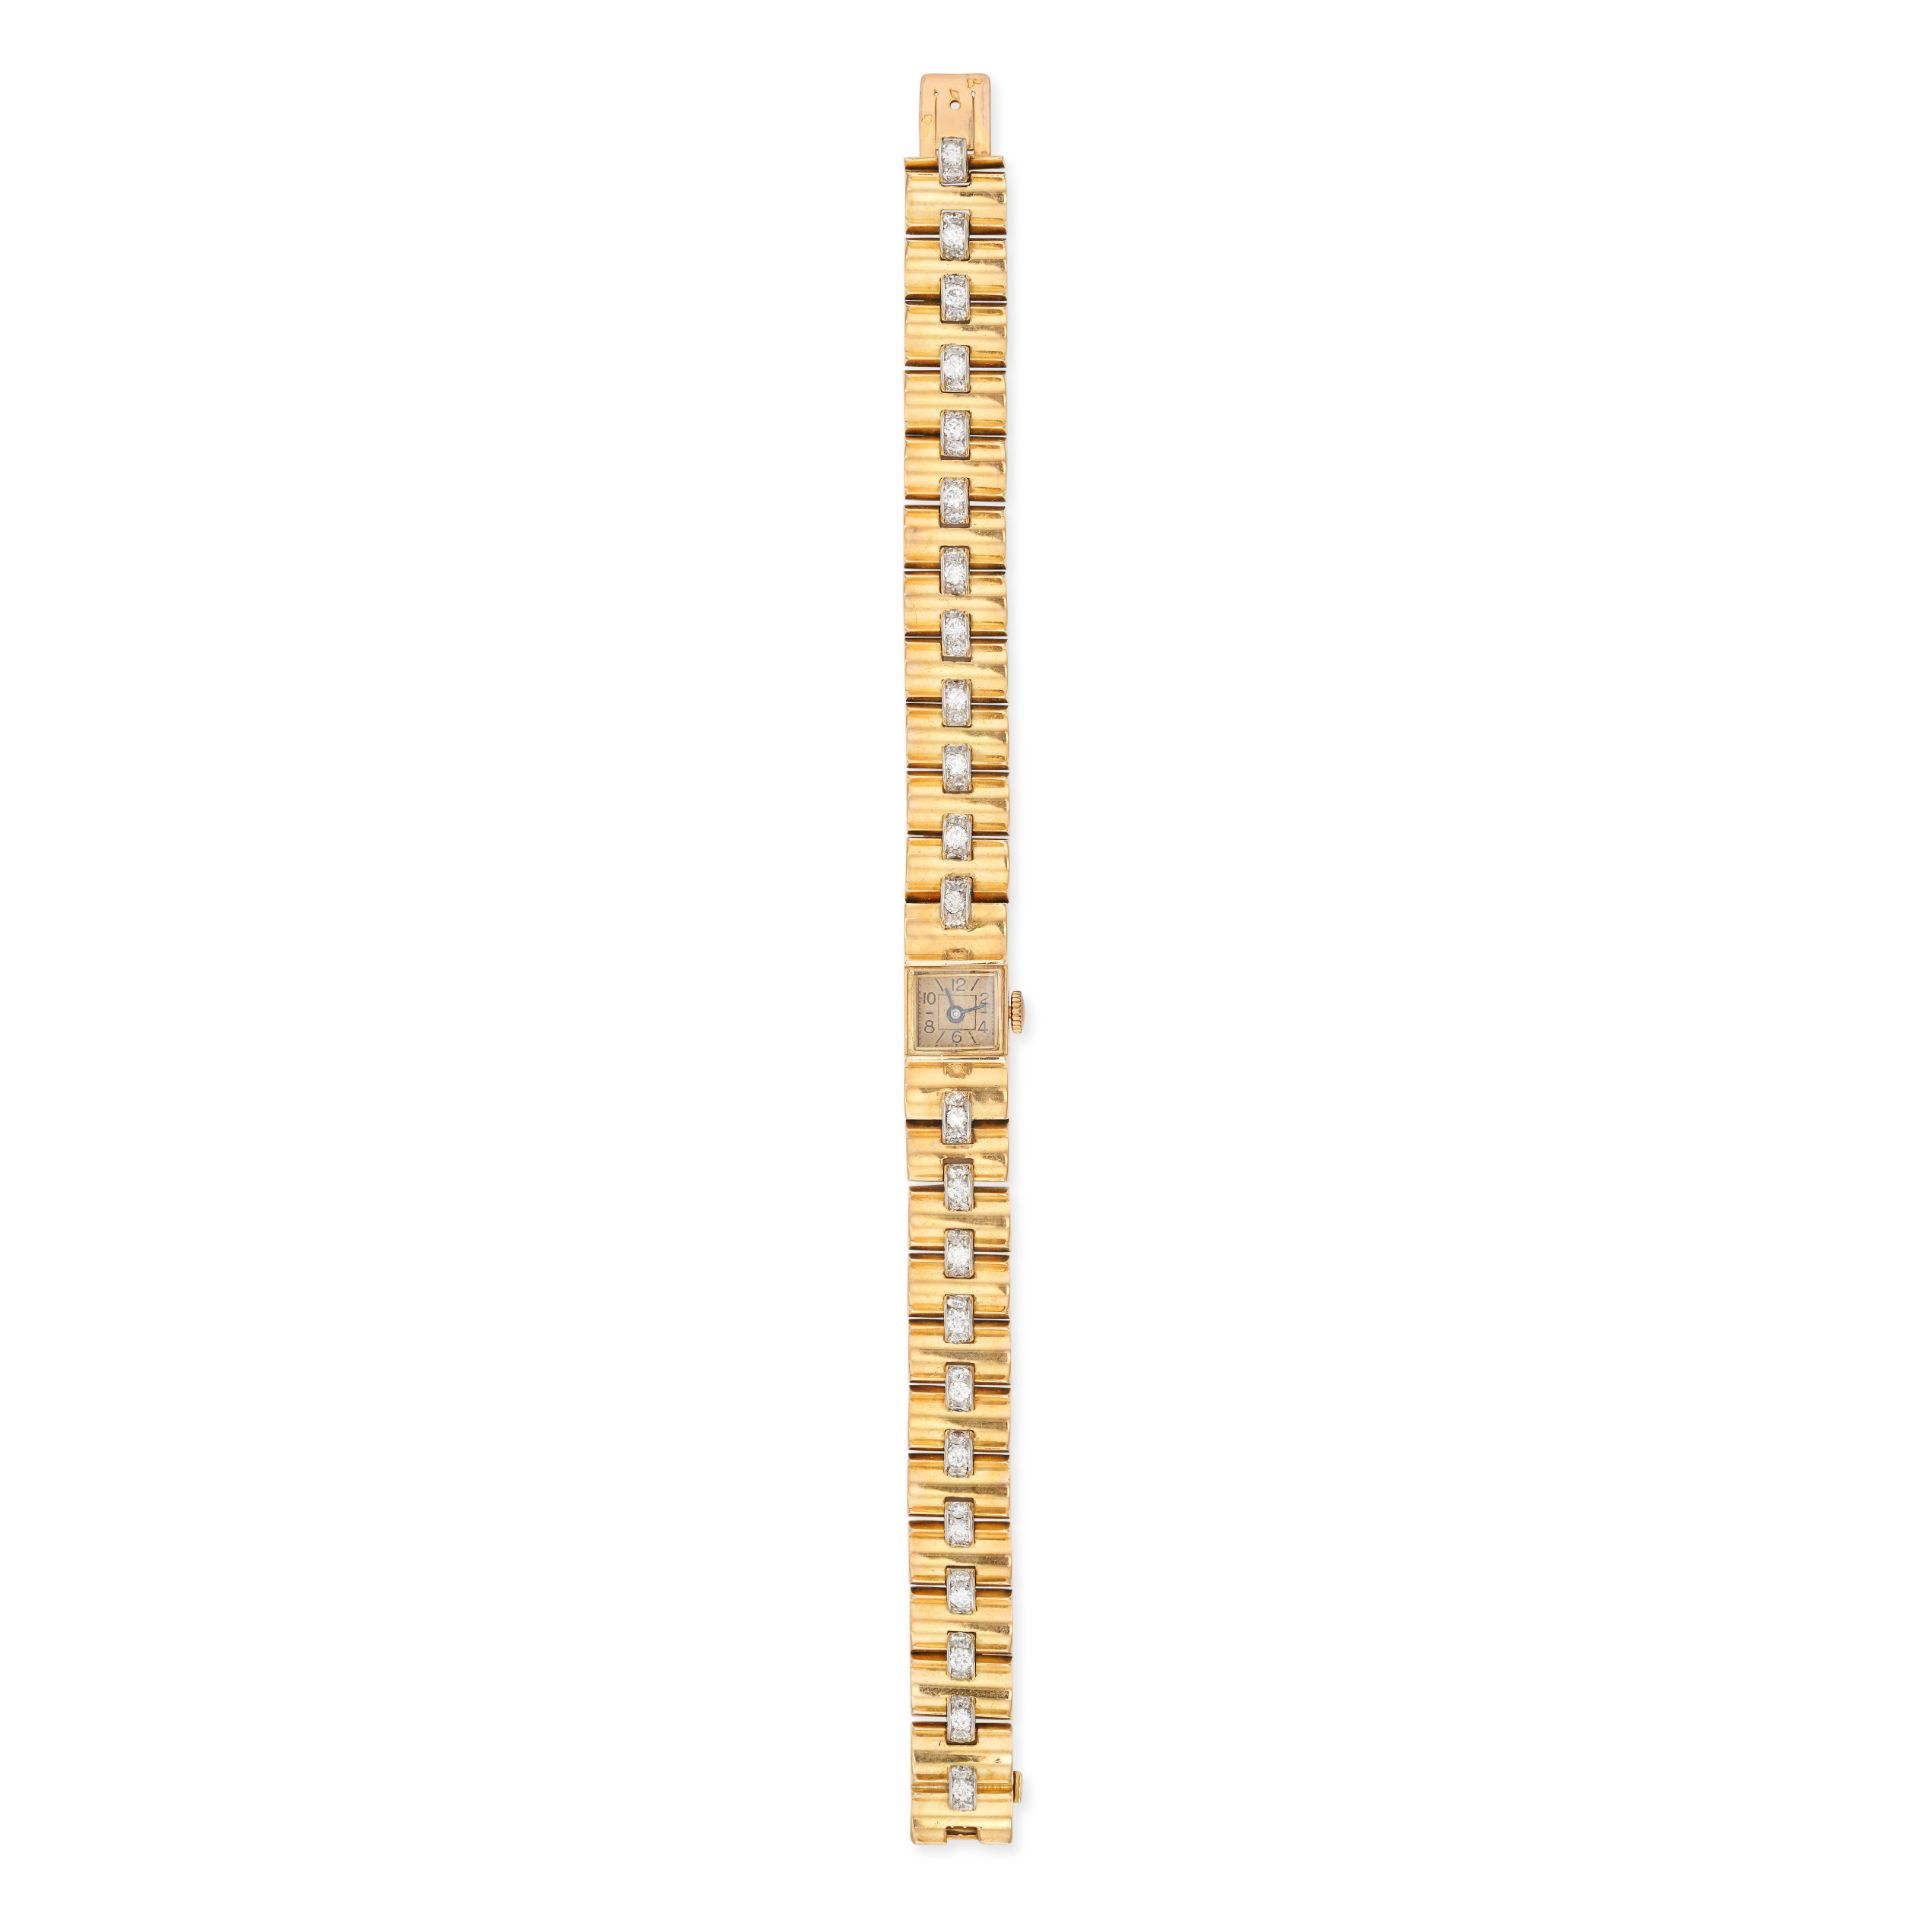 VAN CLEEF & ARPELS - A VINTAGE LADIES VCA  DIAMOND BRACELET WATCH in 18ct yellow gold, 54.505, 15...